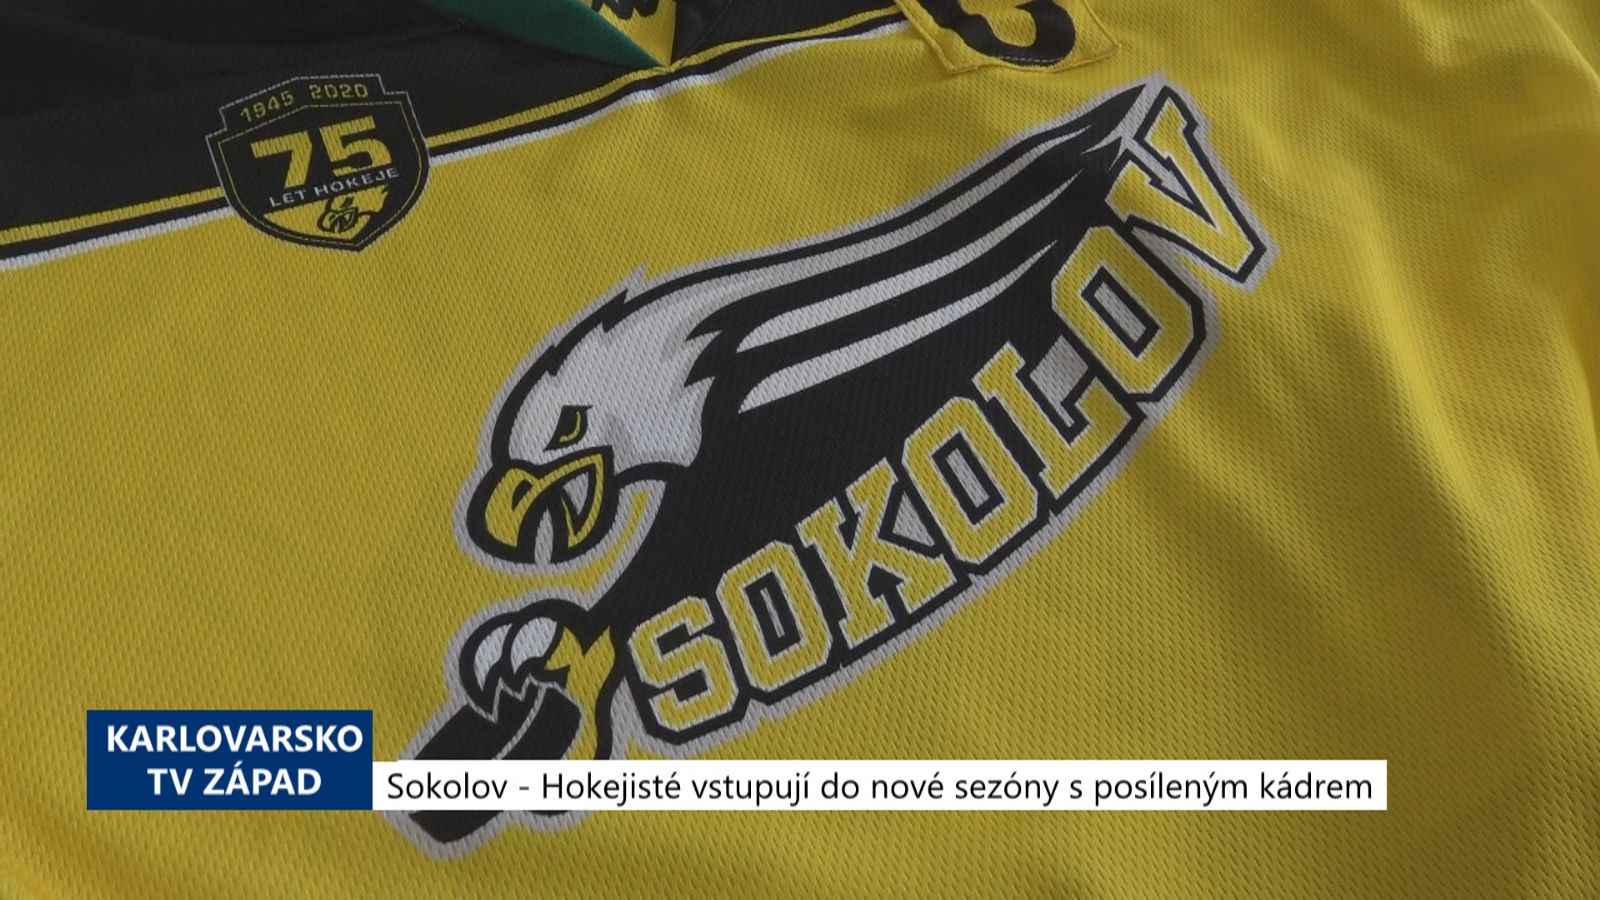 Sokolov: Hokejisté vstupují do nové sezóny s posíleným kádrem (TV Západ)